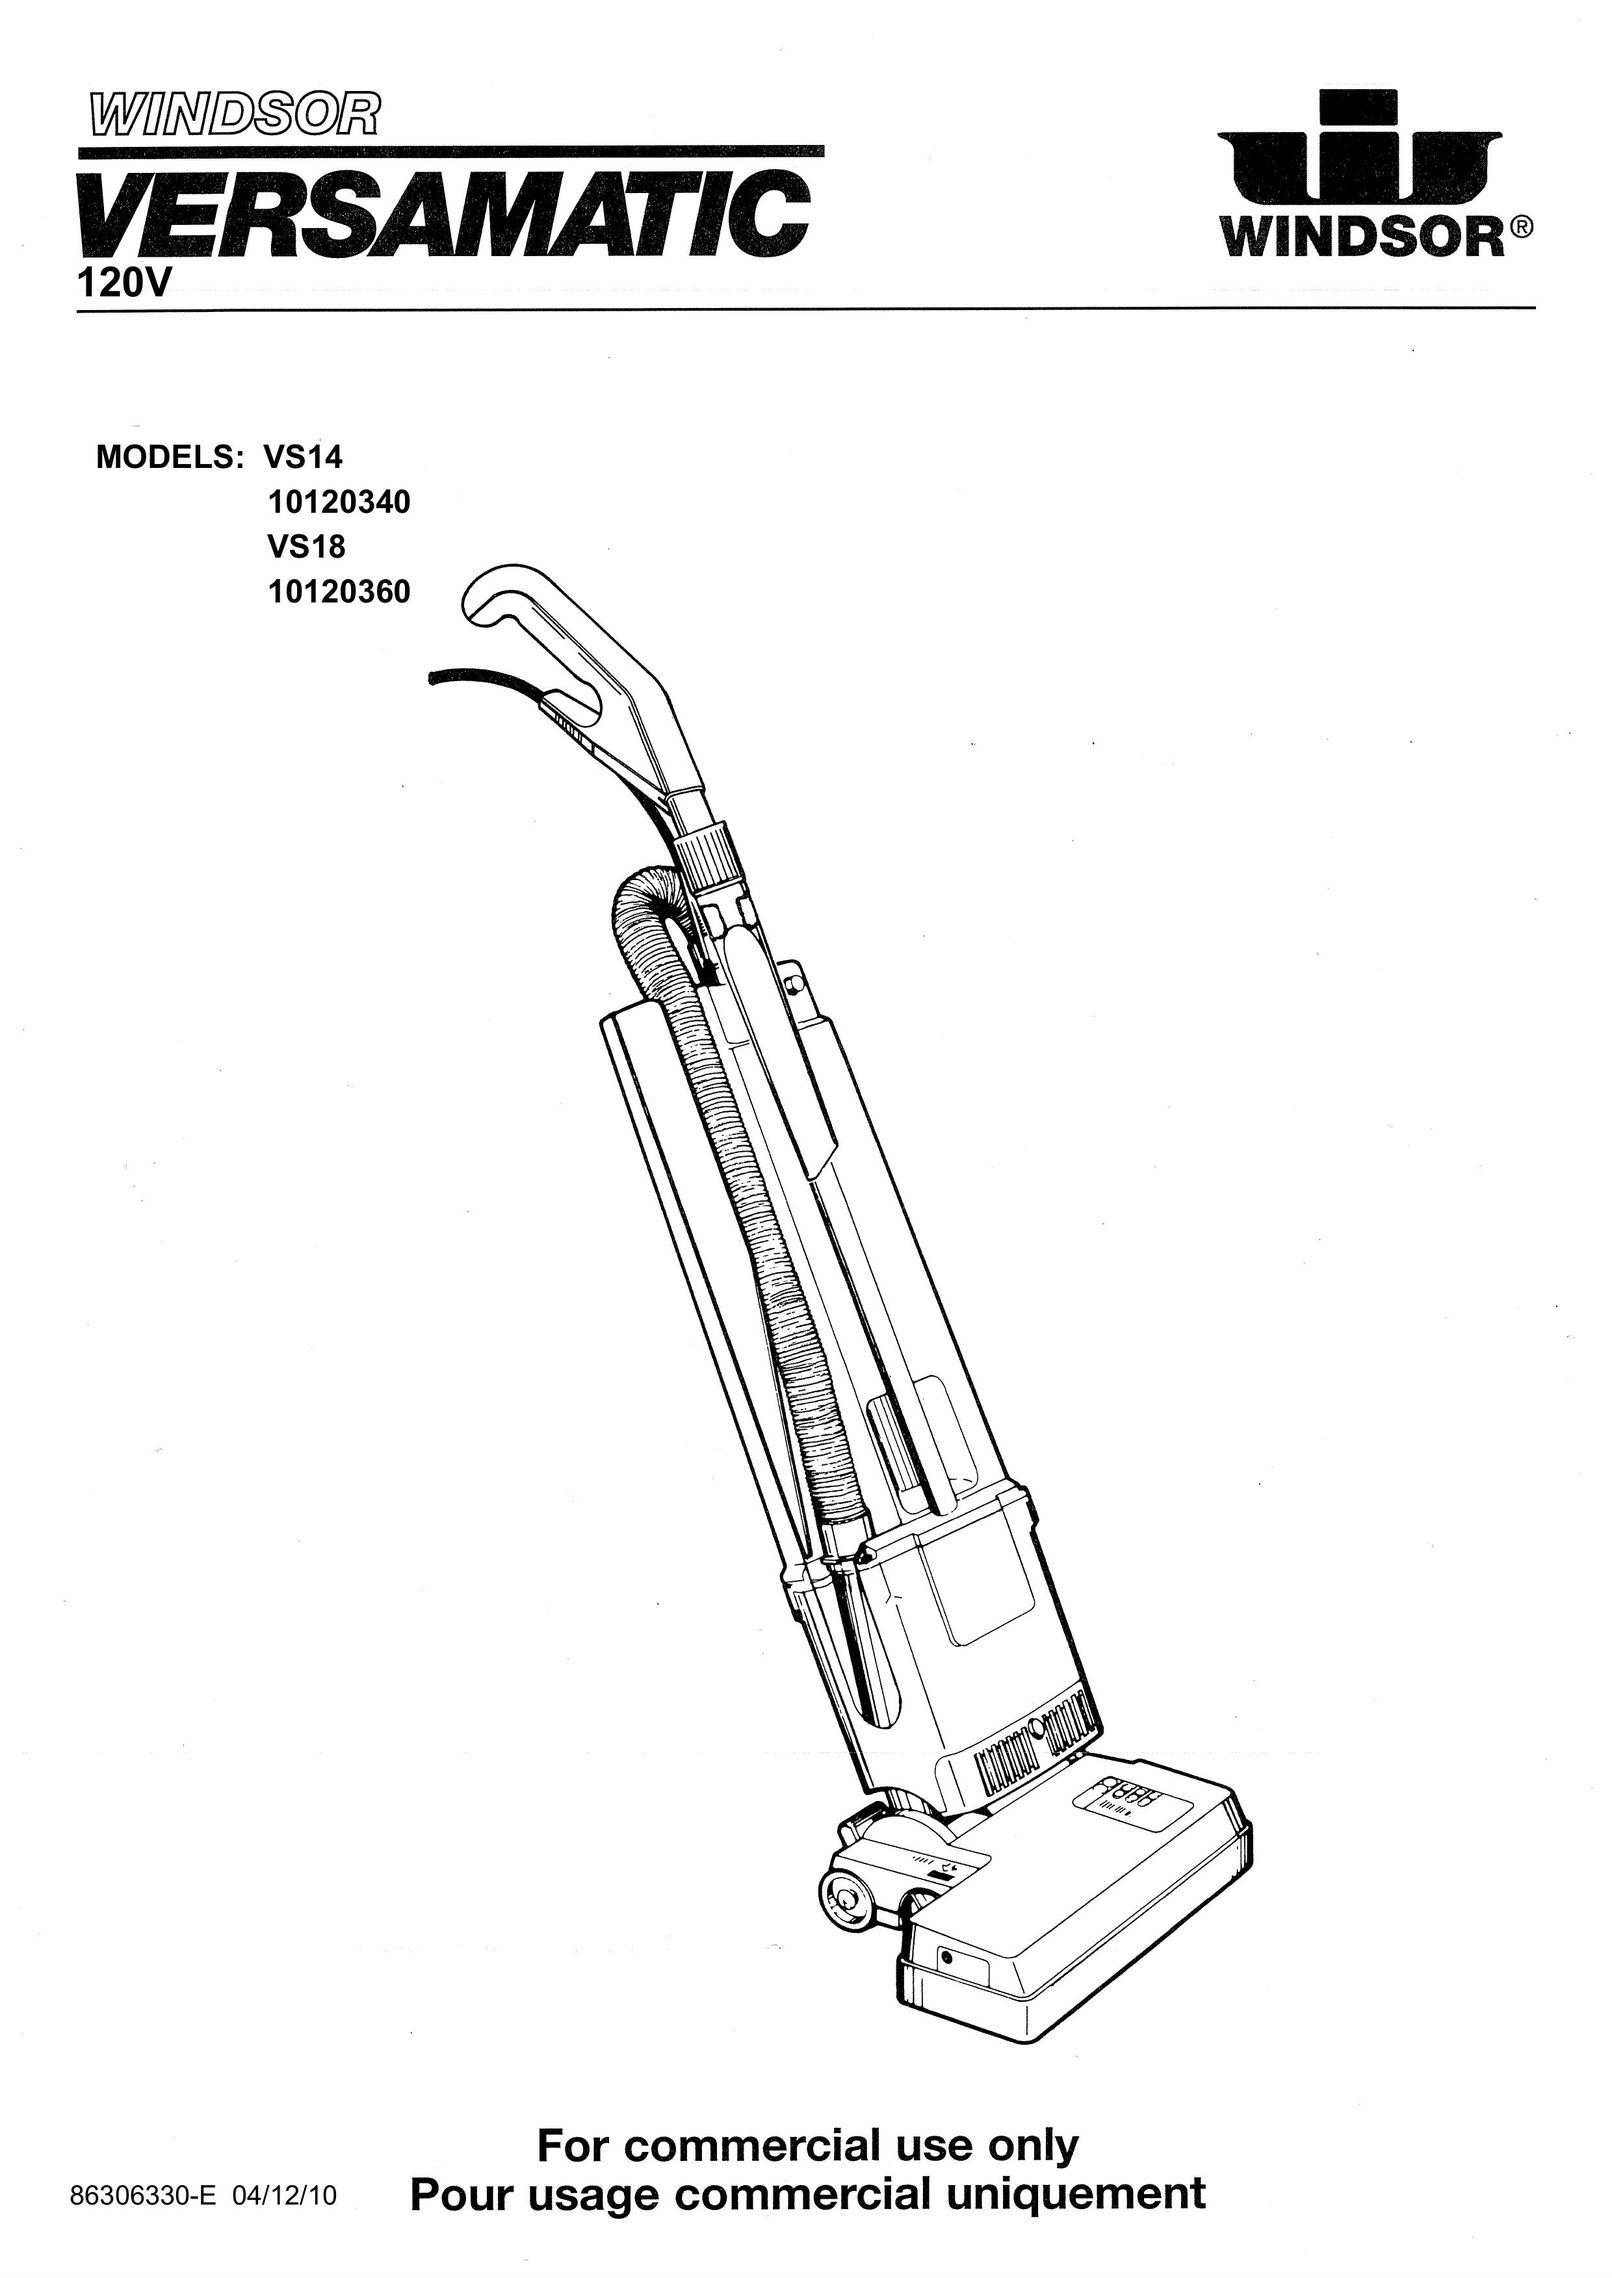 Windsor 10120340 Vacuum Cleaner User Manual